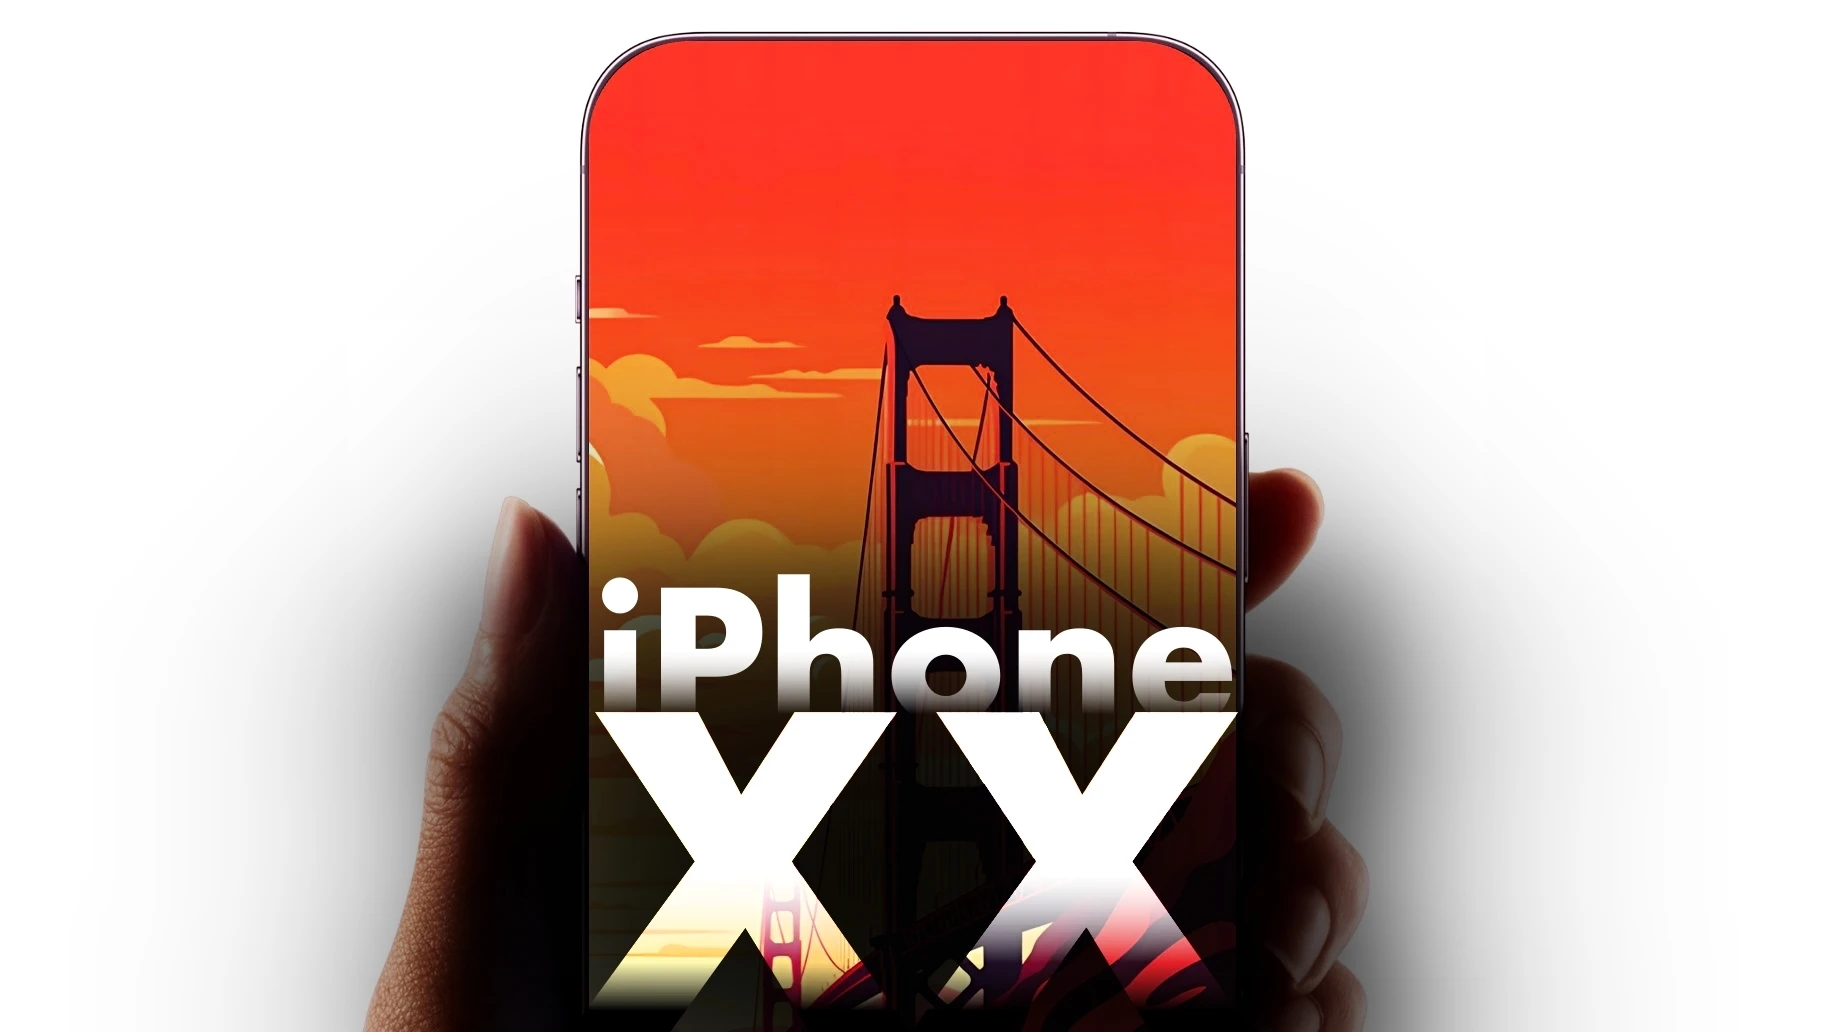 План Apple по выпуску iPhone XX: Небьющийся iPhone с цельностеклянным корпусом или последняя задумка Тима Кука? фото